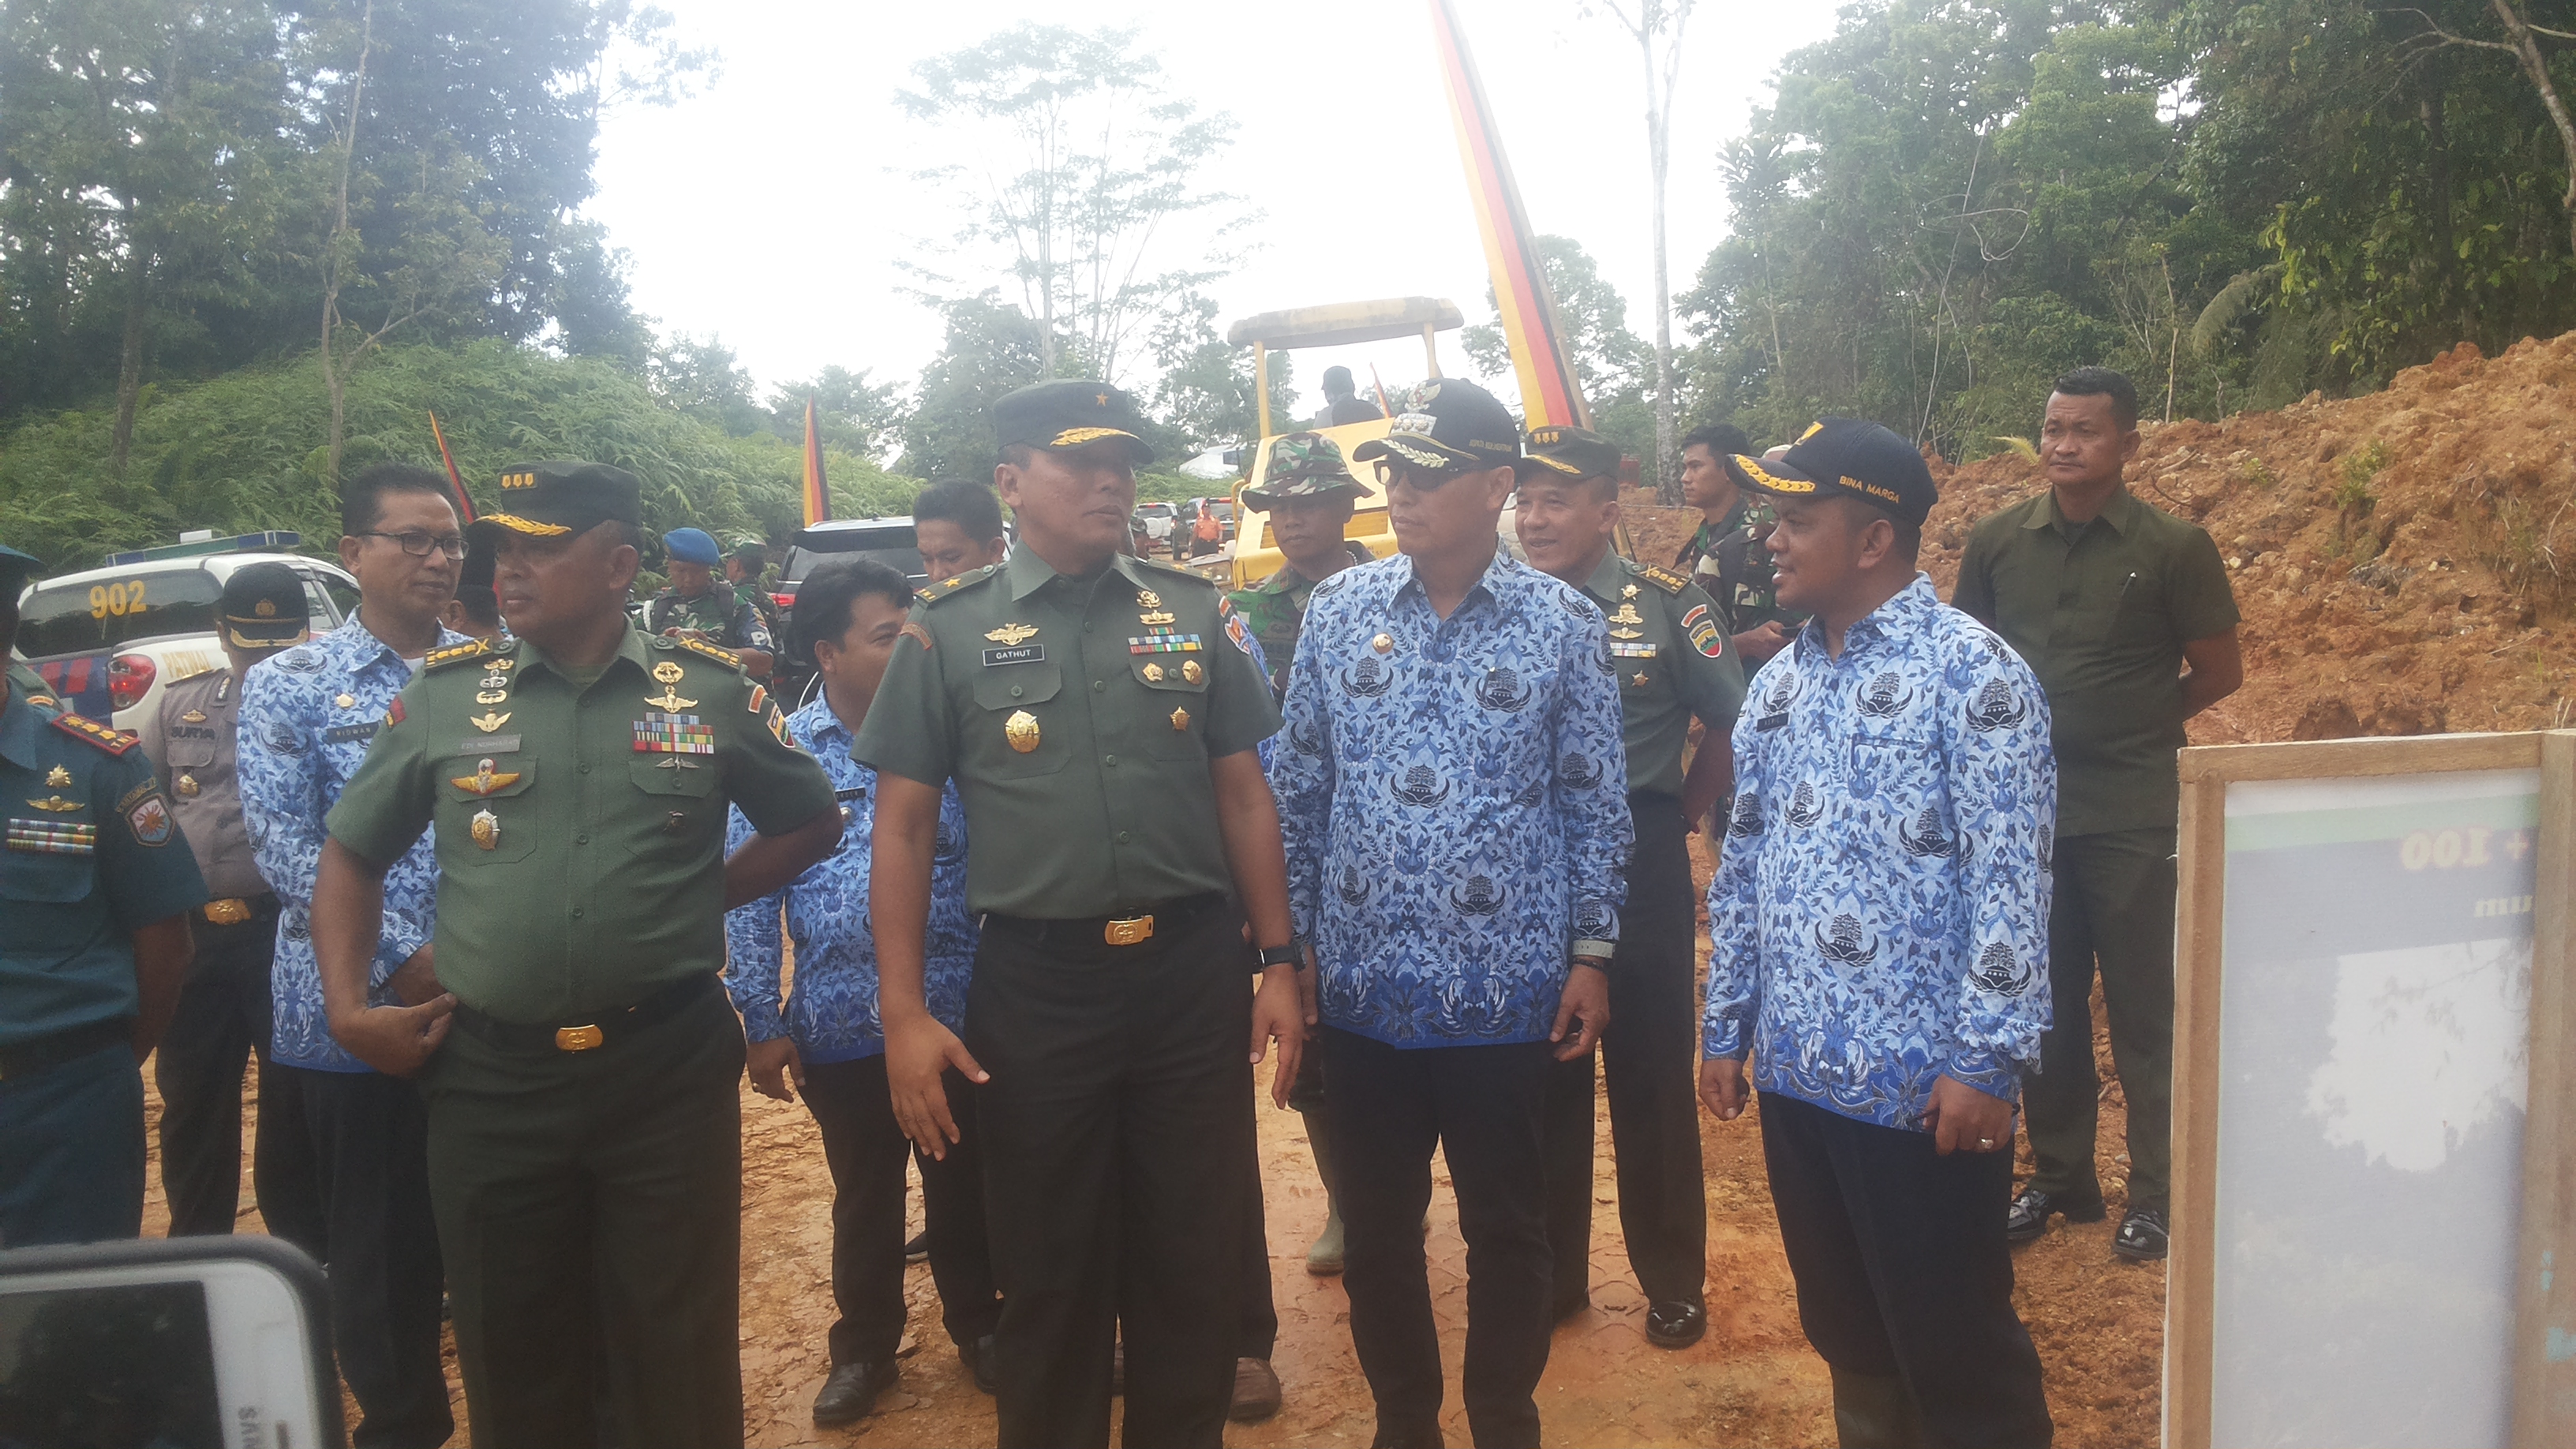 Wa Aster Kasad Brigjen TNI Gathut Setyo Utomo Tinjau TMMD di Mentawai.